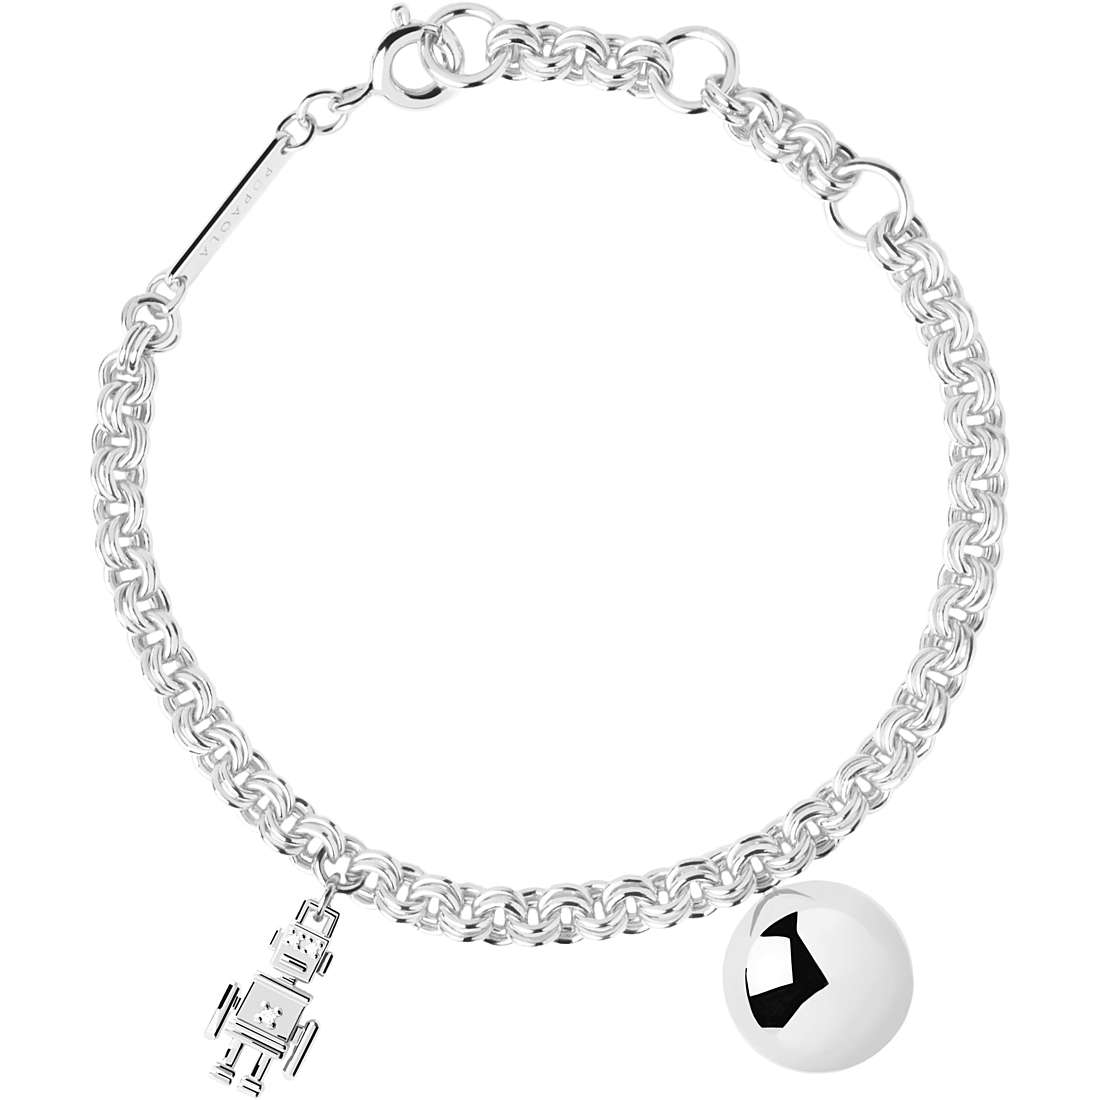 PDPaola Super Future bracelet woman Bracelet with 925 Silver Charms/Beads jewel PU02-163-U